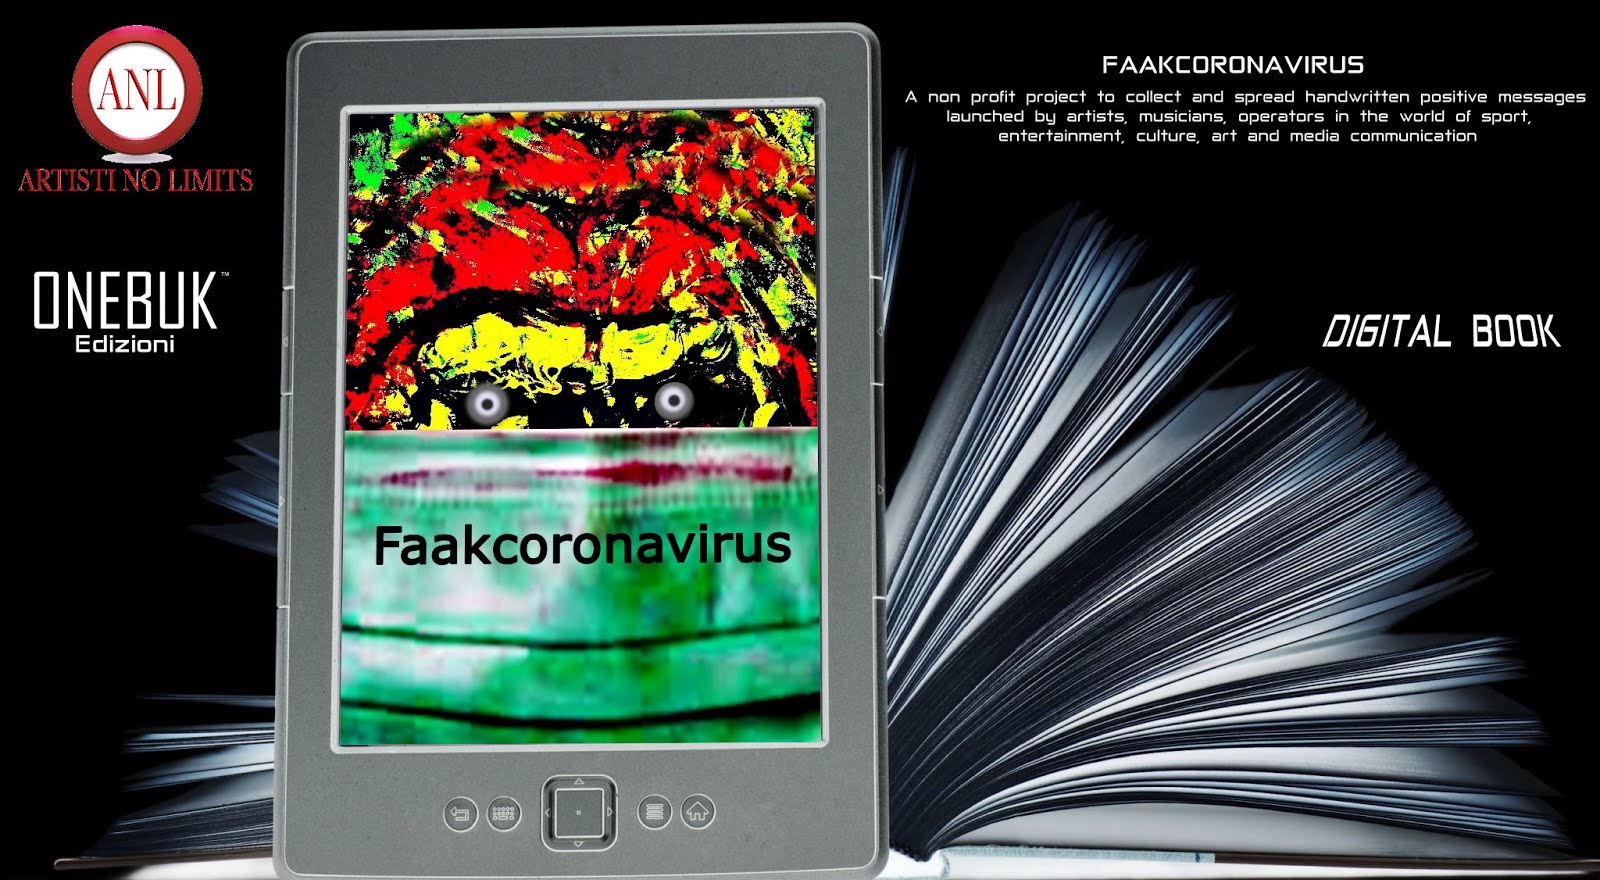 Faakcoronavirus